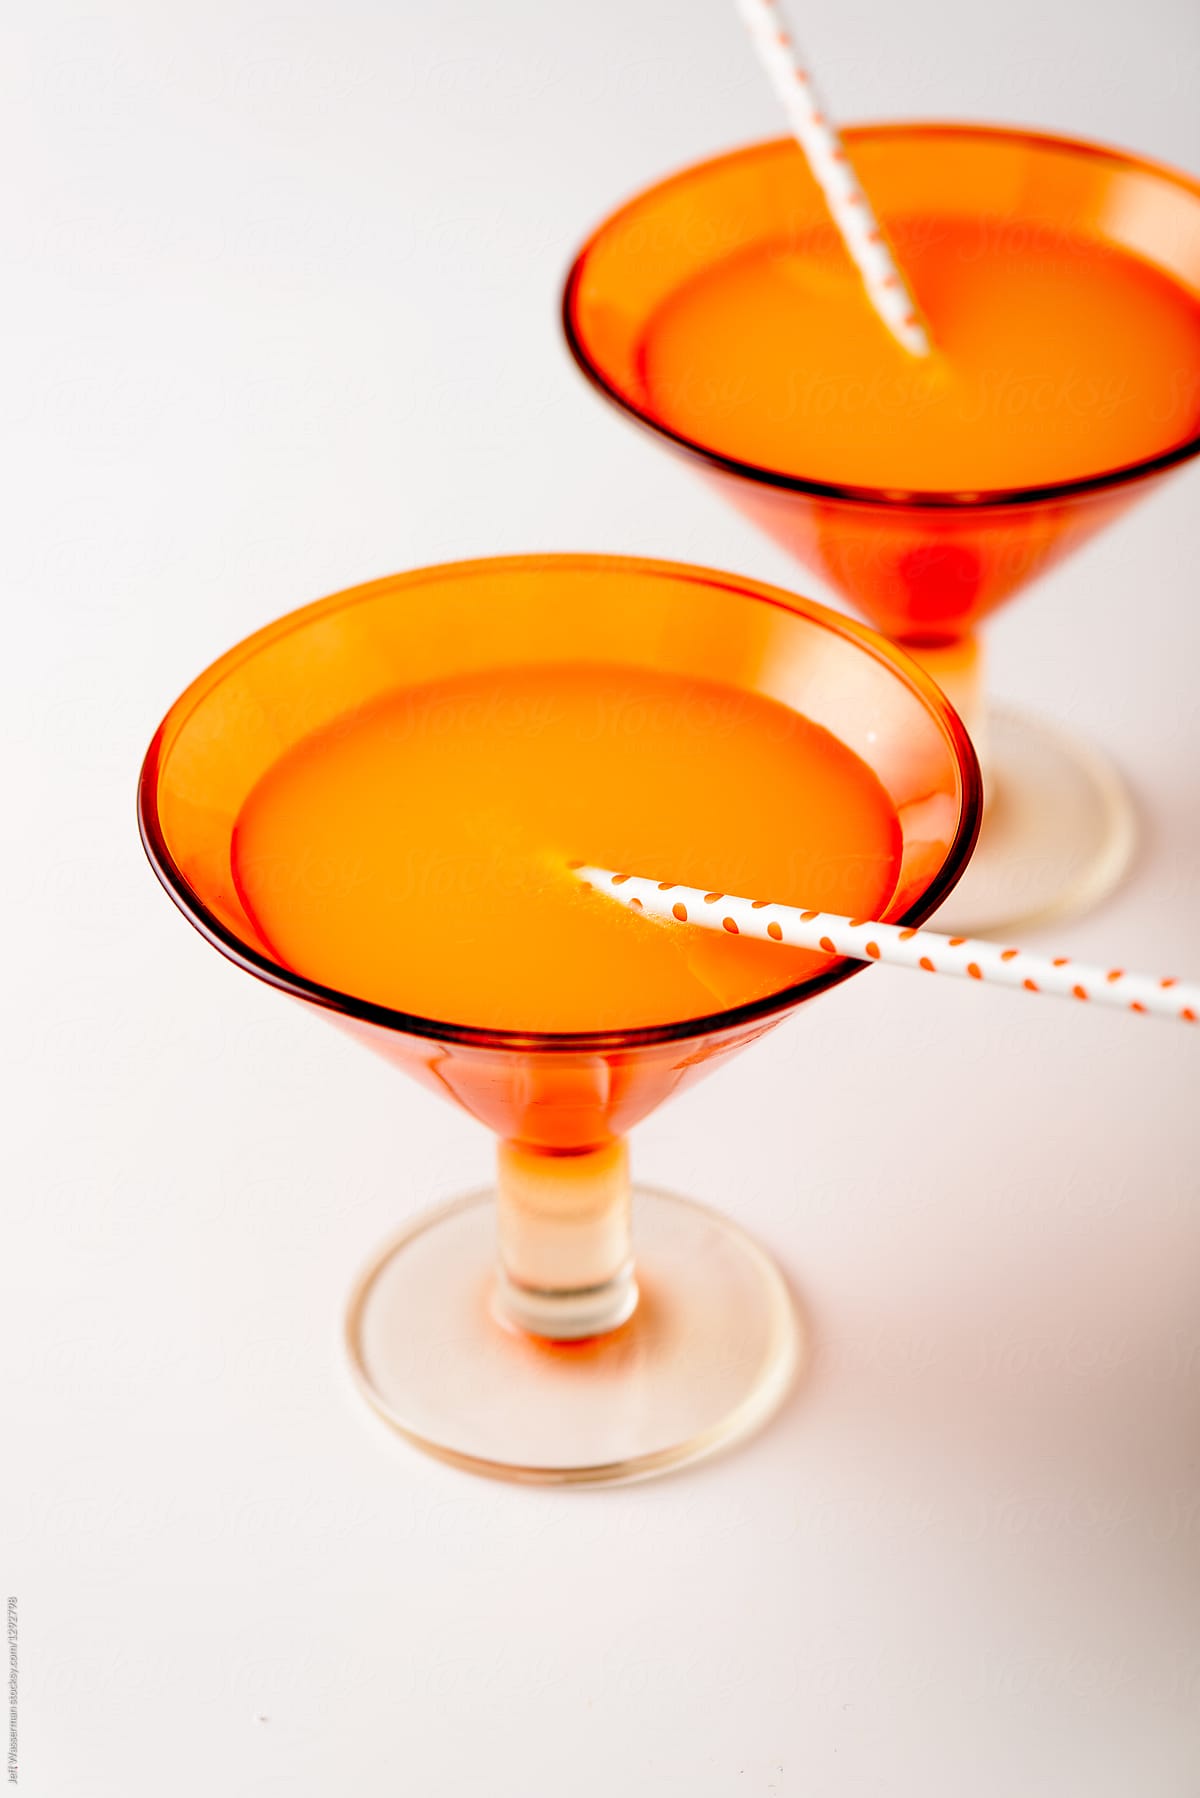 Orange Juice or Orange Juice Cocktail